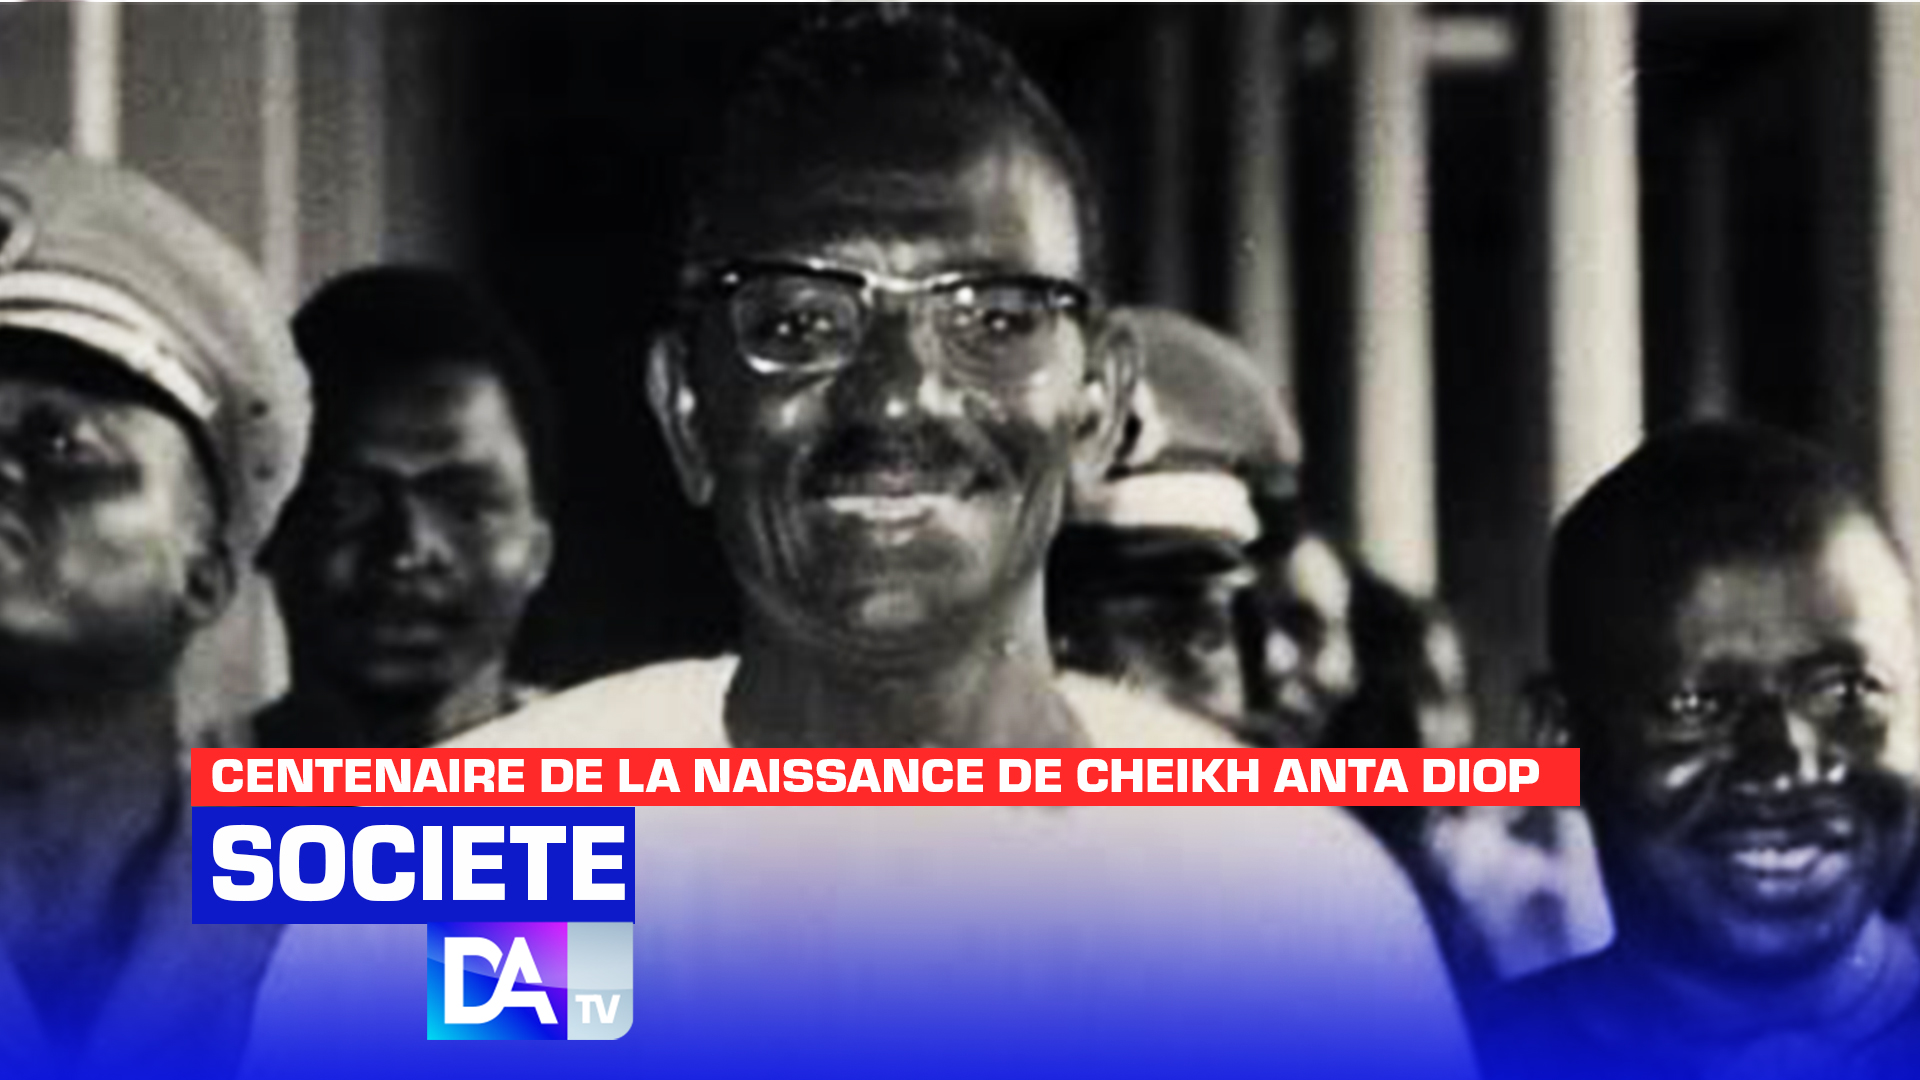 1923-2023 / Centenaire de la naissance de Cheikh Anta Diop : 37 ans après sa disparition, l’ombre idéologique de Cheikh Anta Diop plane-t-elle toujours sur l’espace politique ?